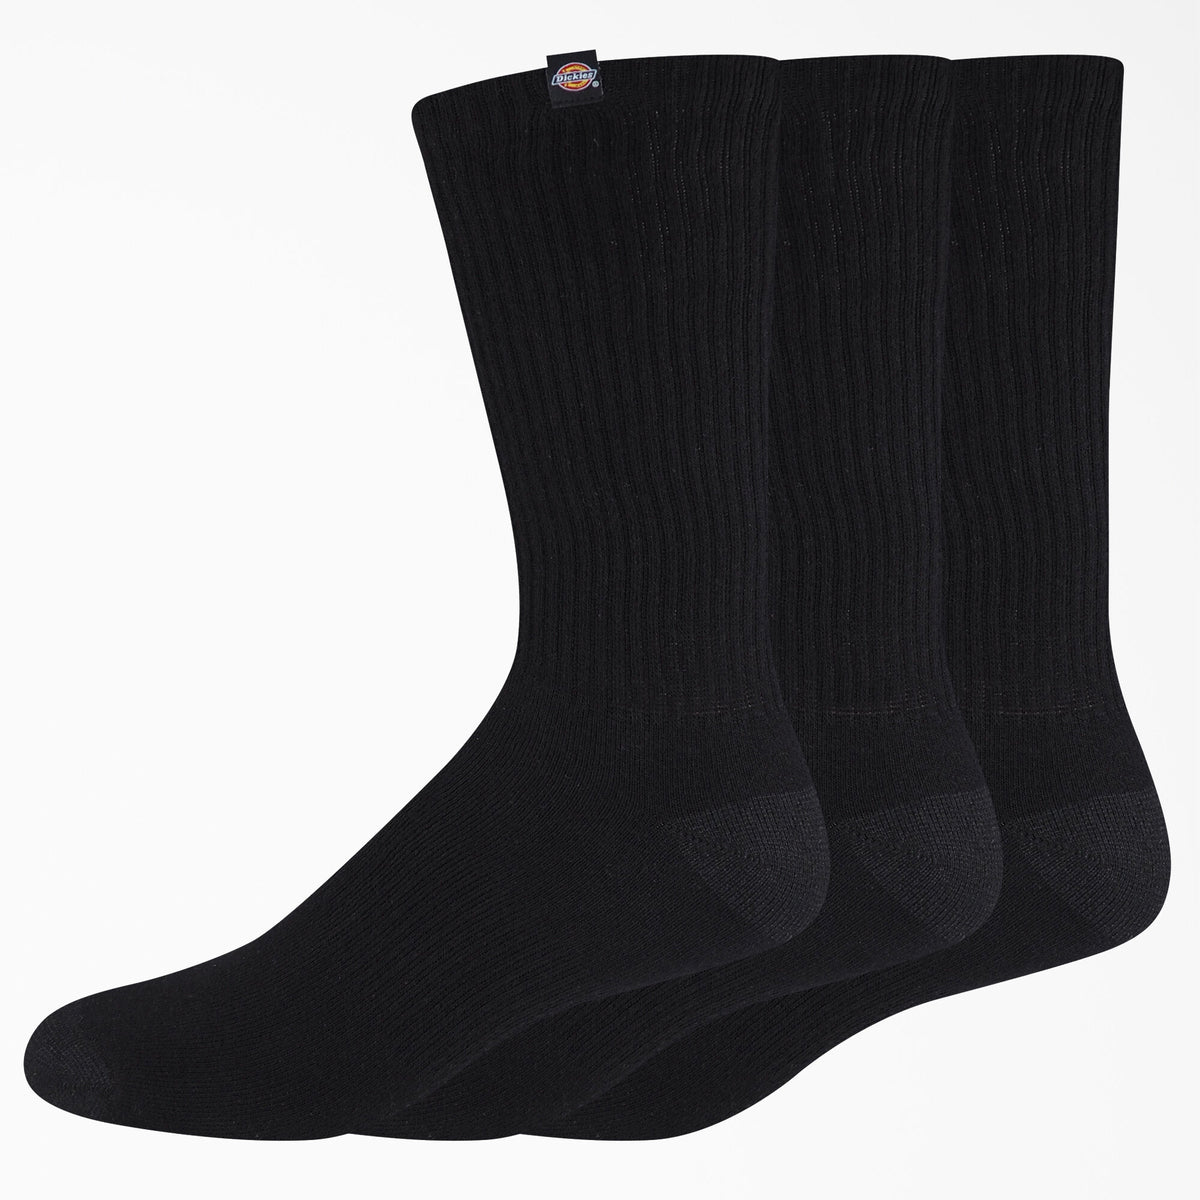 Dickies Label Crew Socks - Black– Skates USA